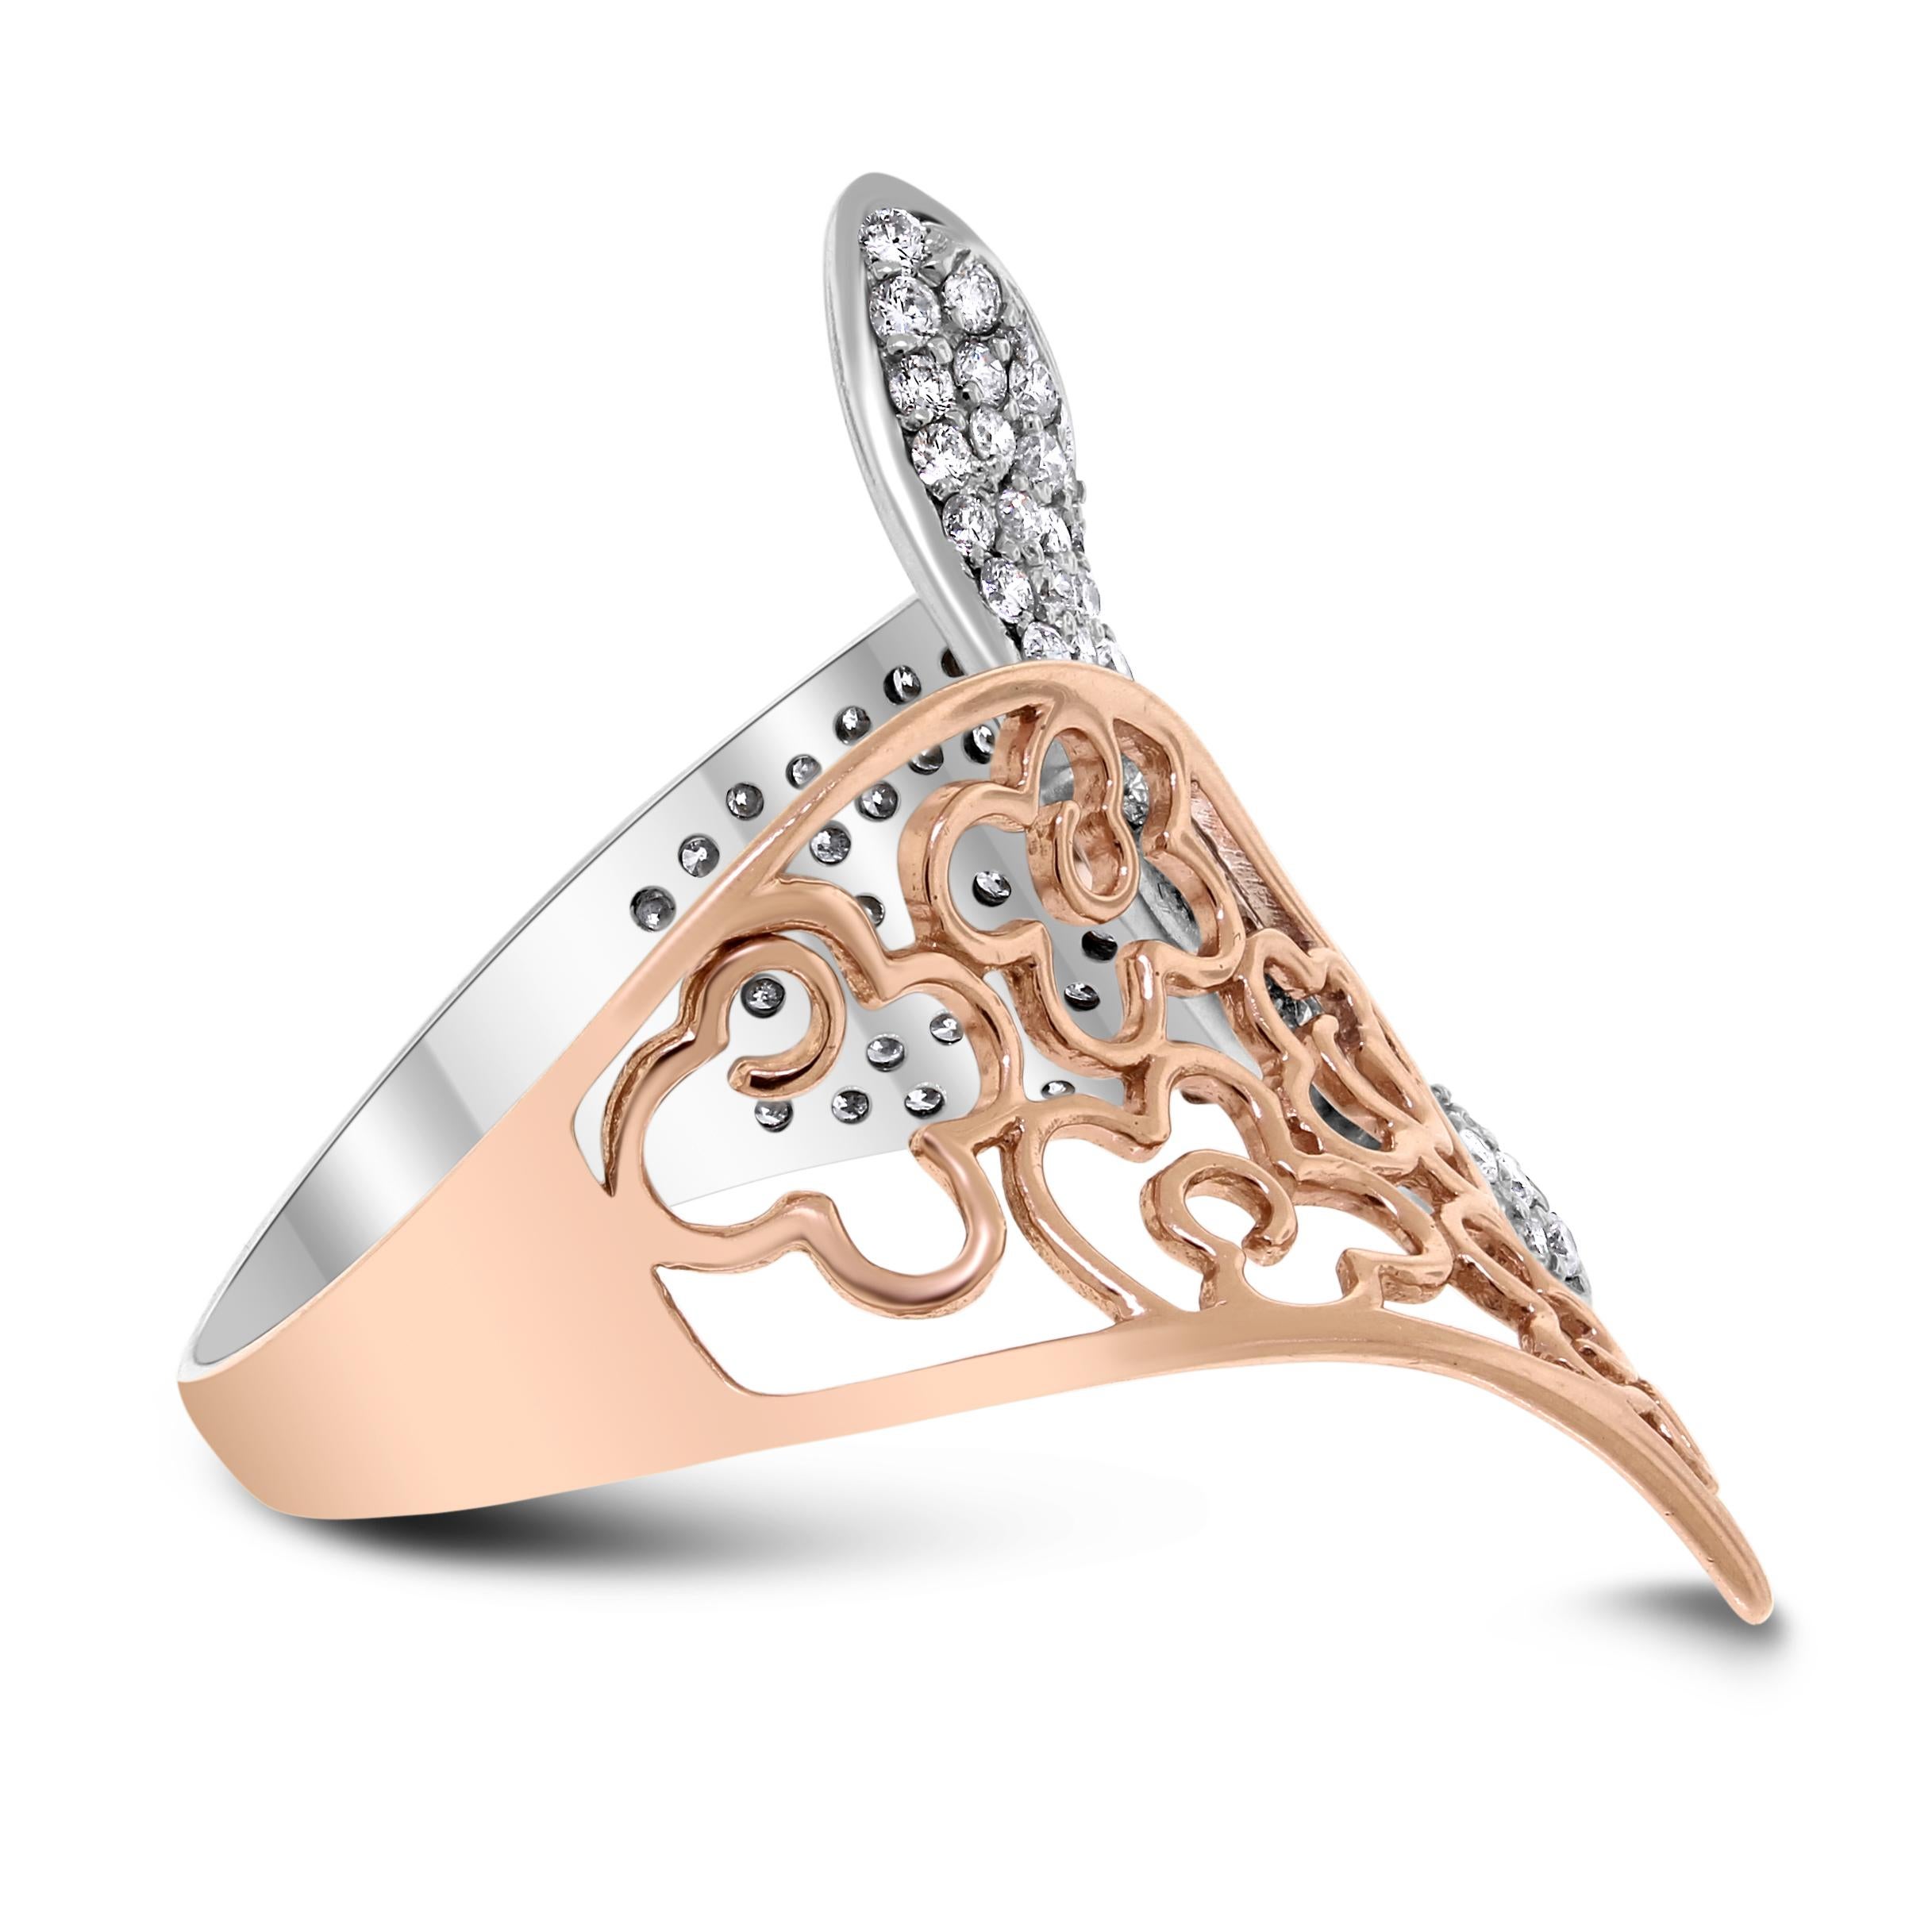 Der Lolita Ring ist ein malerischer, zierlicher Diamantring aus Rosé- und Weißgold mit einem süßen und pikanten Touch. 

Form der Diamanten: Rund 
Gesamtgewicht der Diamanten: 1,33 ct  
Farbe der Diamanten: F - G 
Diamanten Reinheit: SI - I